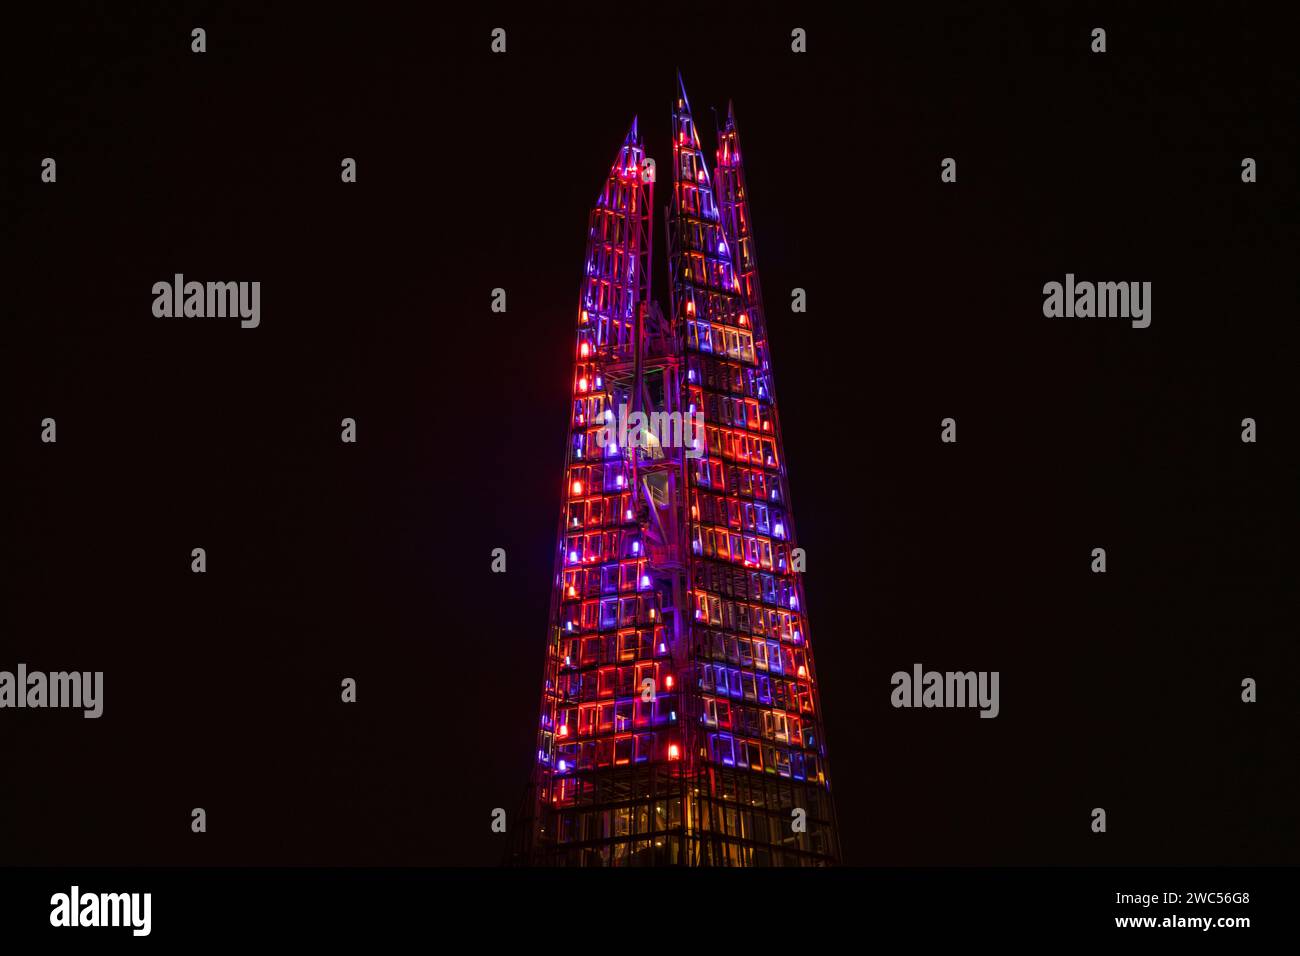 Illuminations lumineuses colorées sur The Shard, Londres, Angleterre. Cela faisait partie de l'écran Shard Lights 2023. Banque D'Images